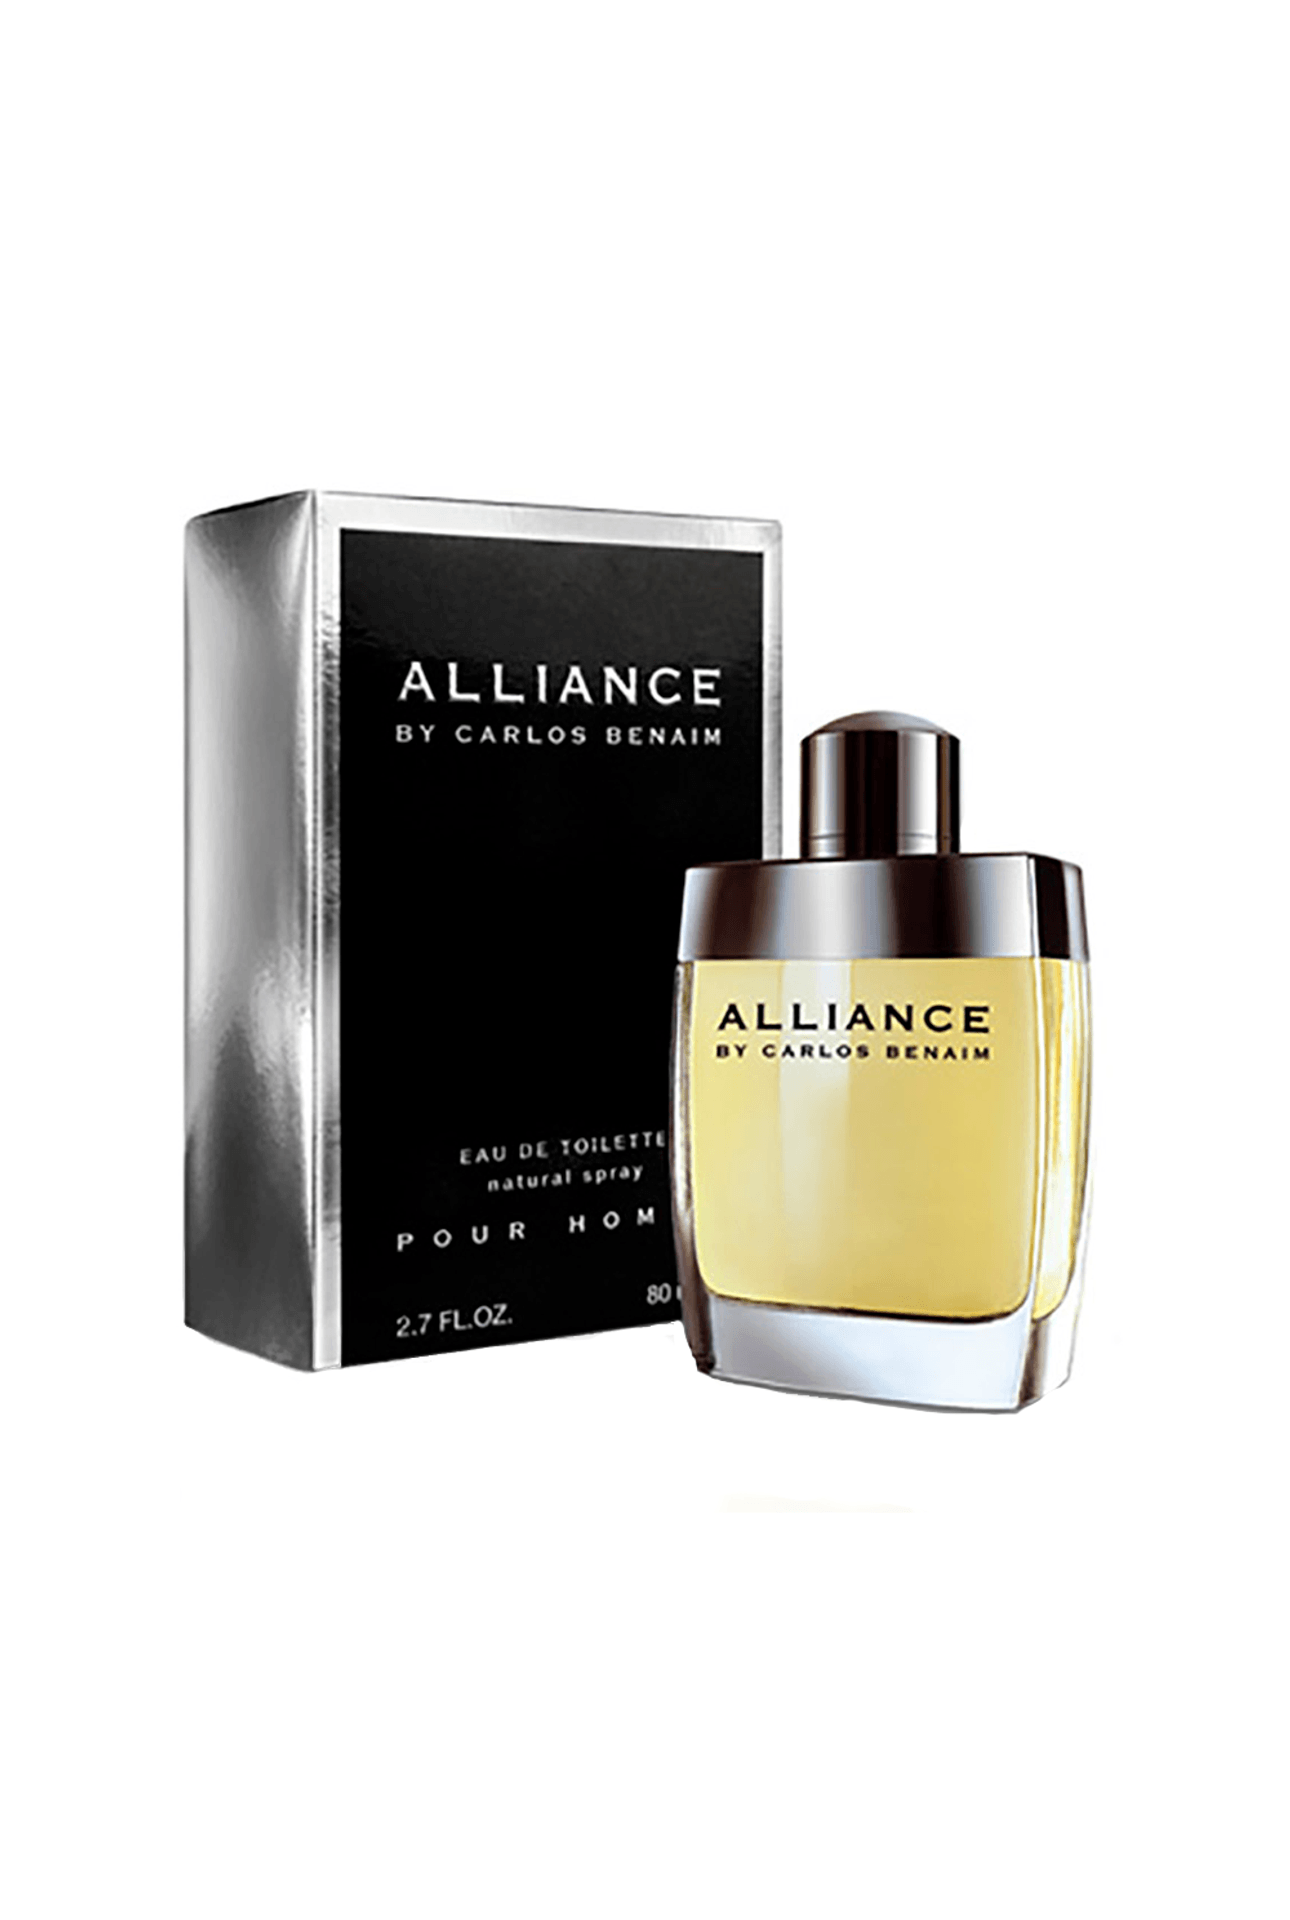 Alliance-Alliance Edt x 80 ml-7791600015022